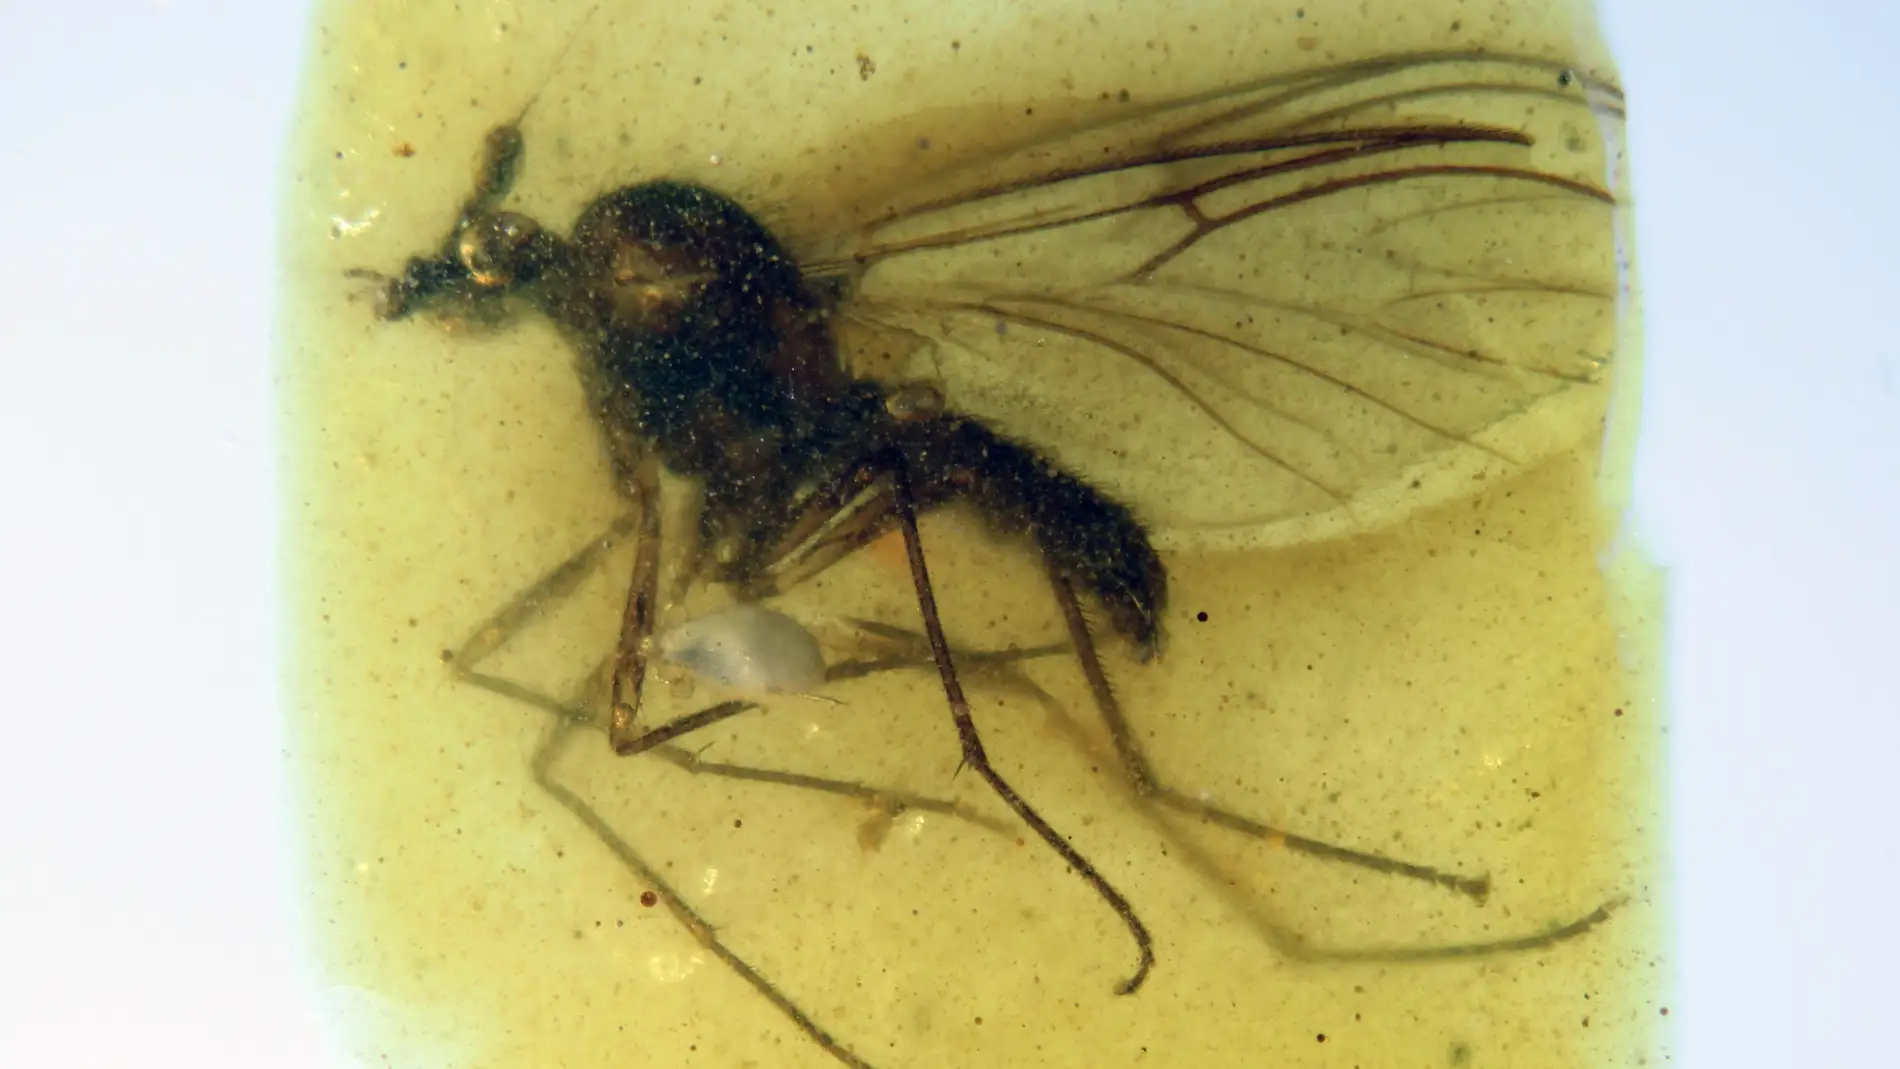 Descubierta una nueva especie de mosca en el ambar de Teruel